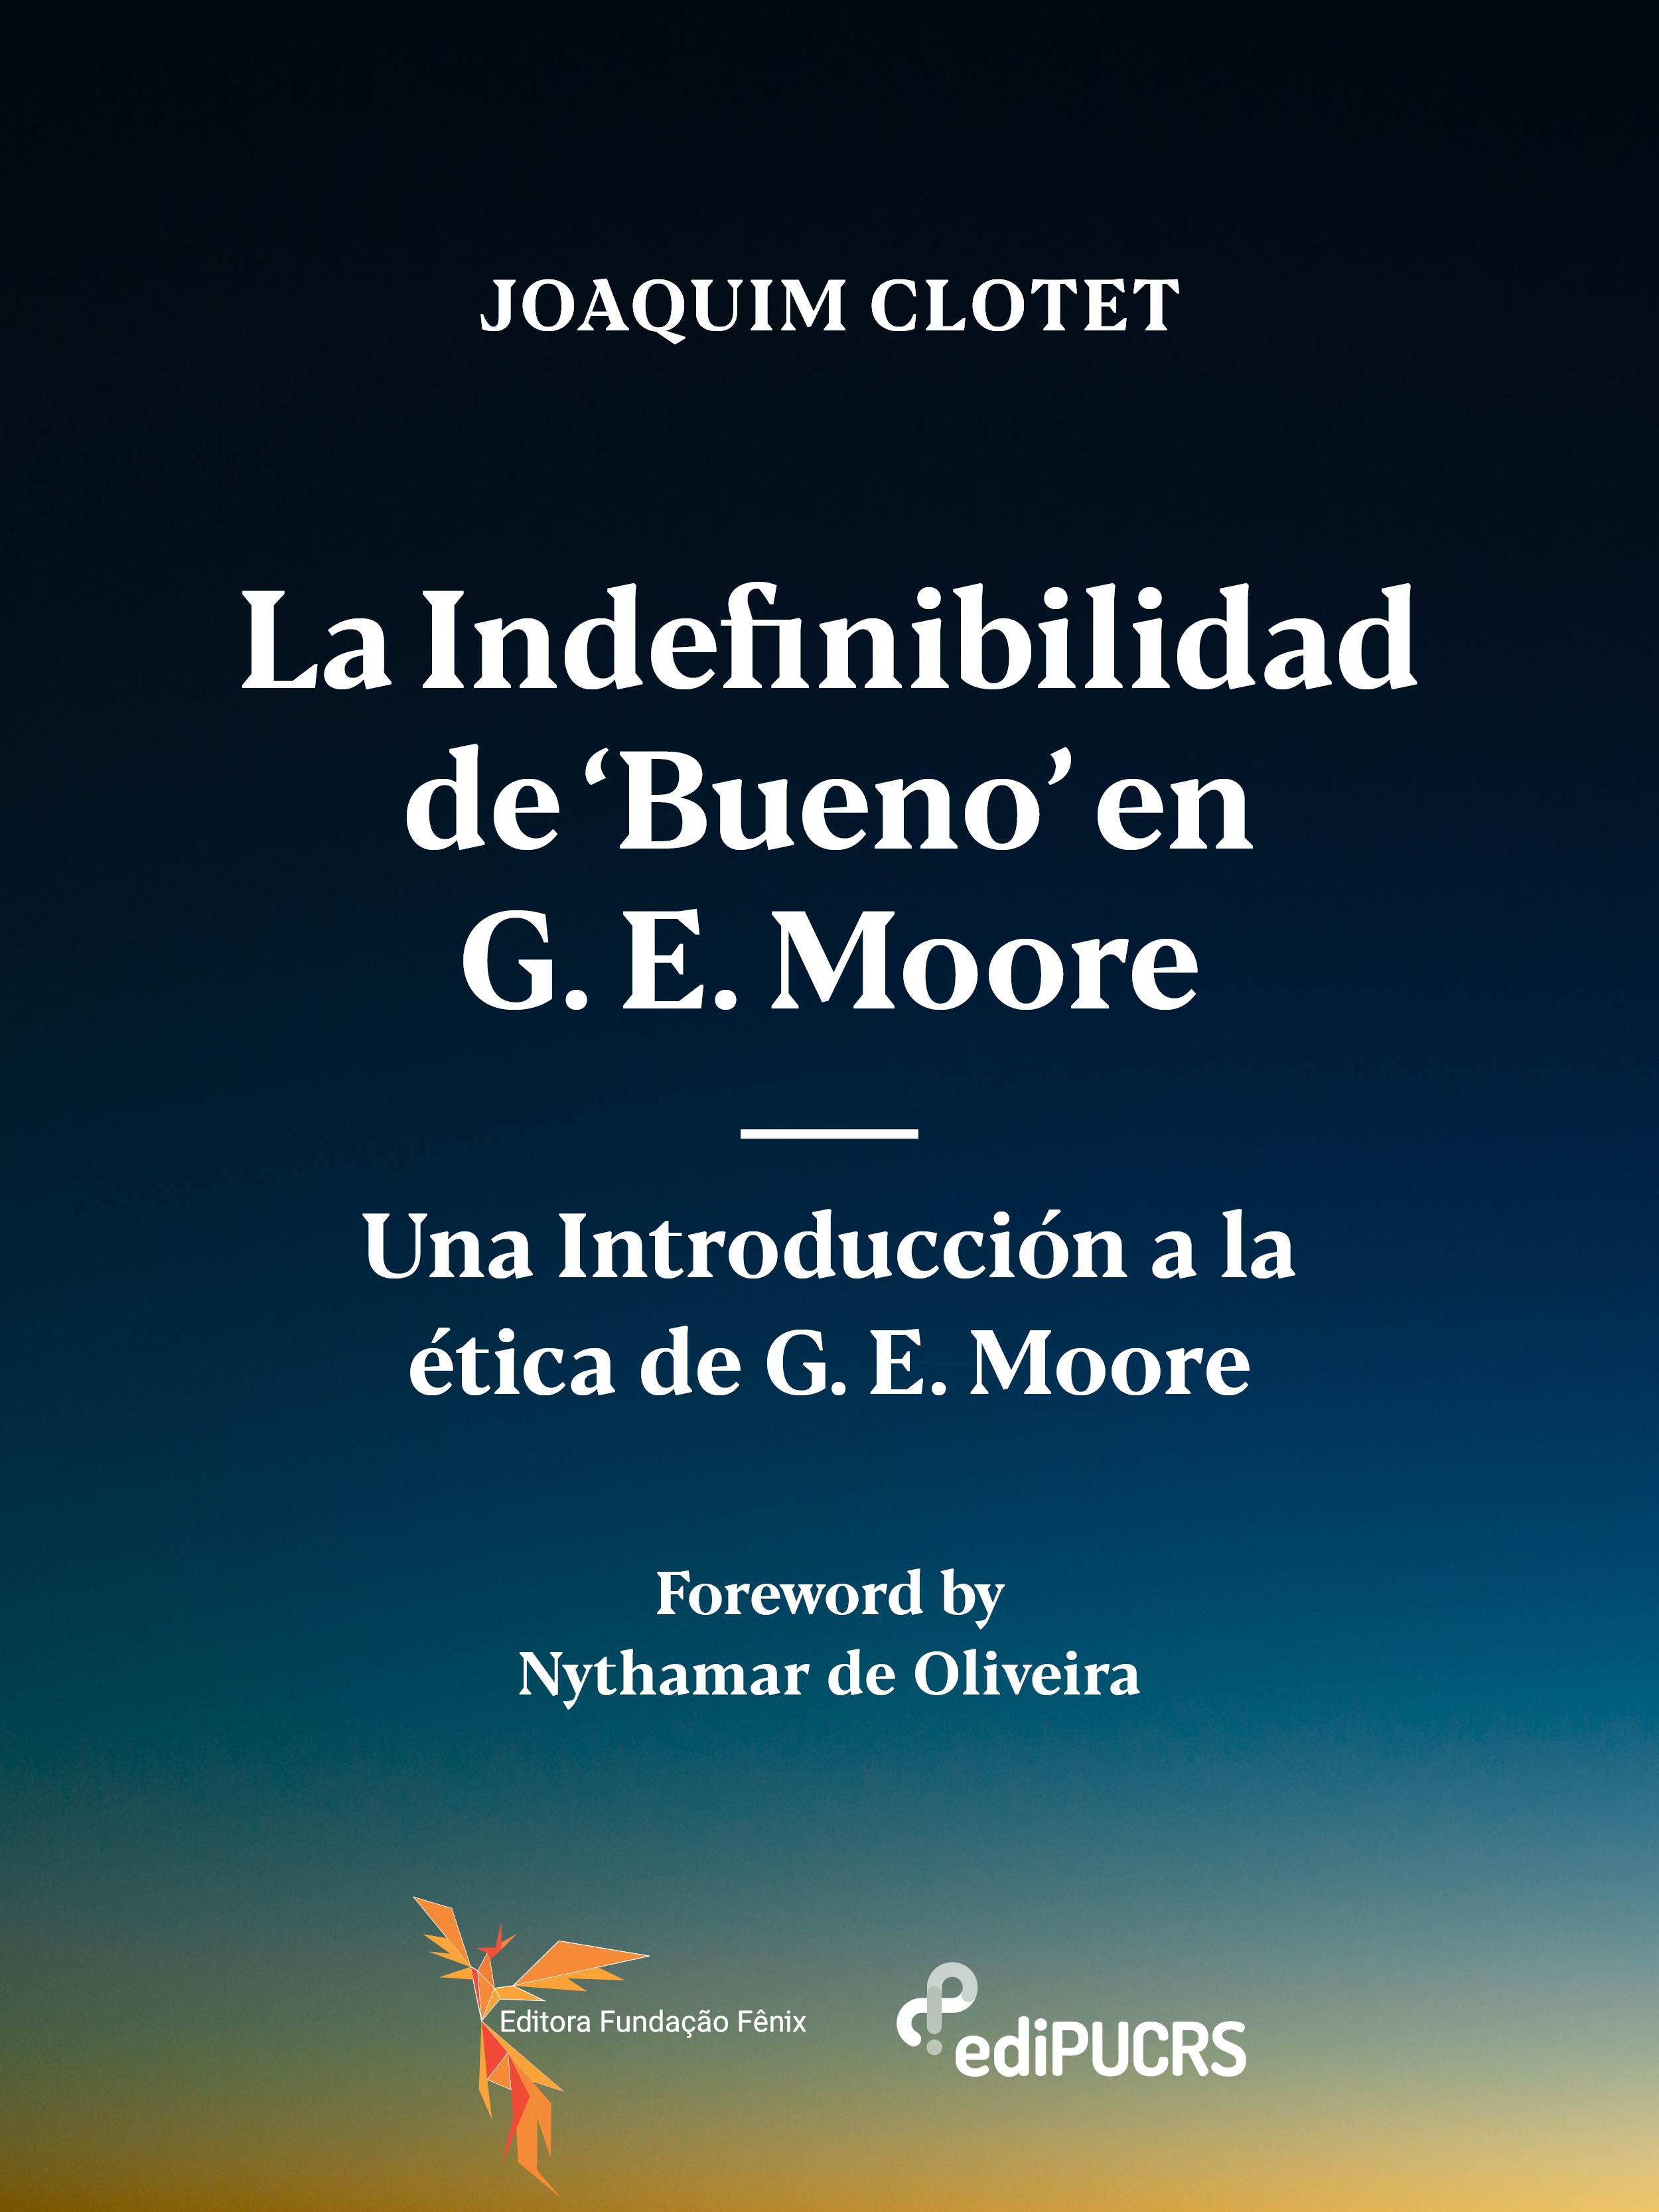 La indefinibilidad de 'bueno' en G. E. Moore: una introducción a la ética de G. E. Moore.